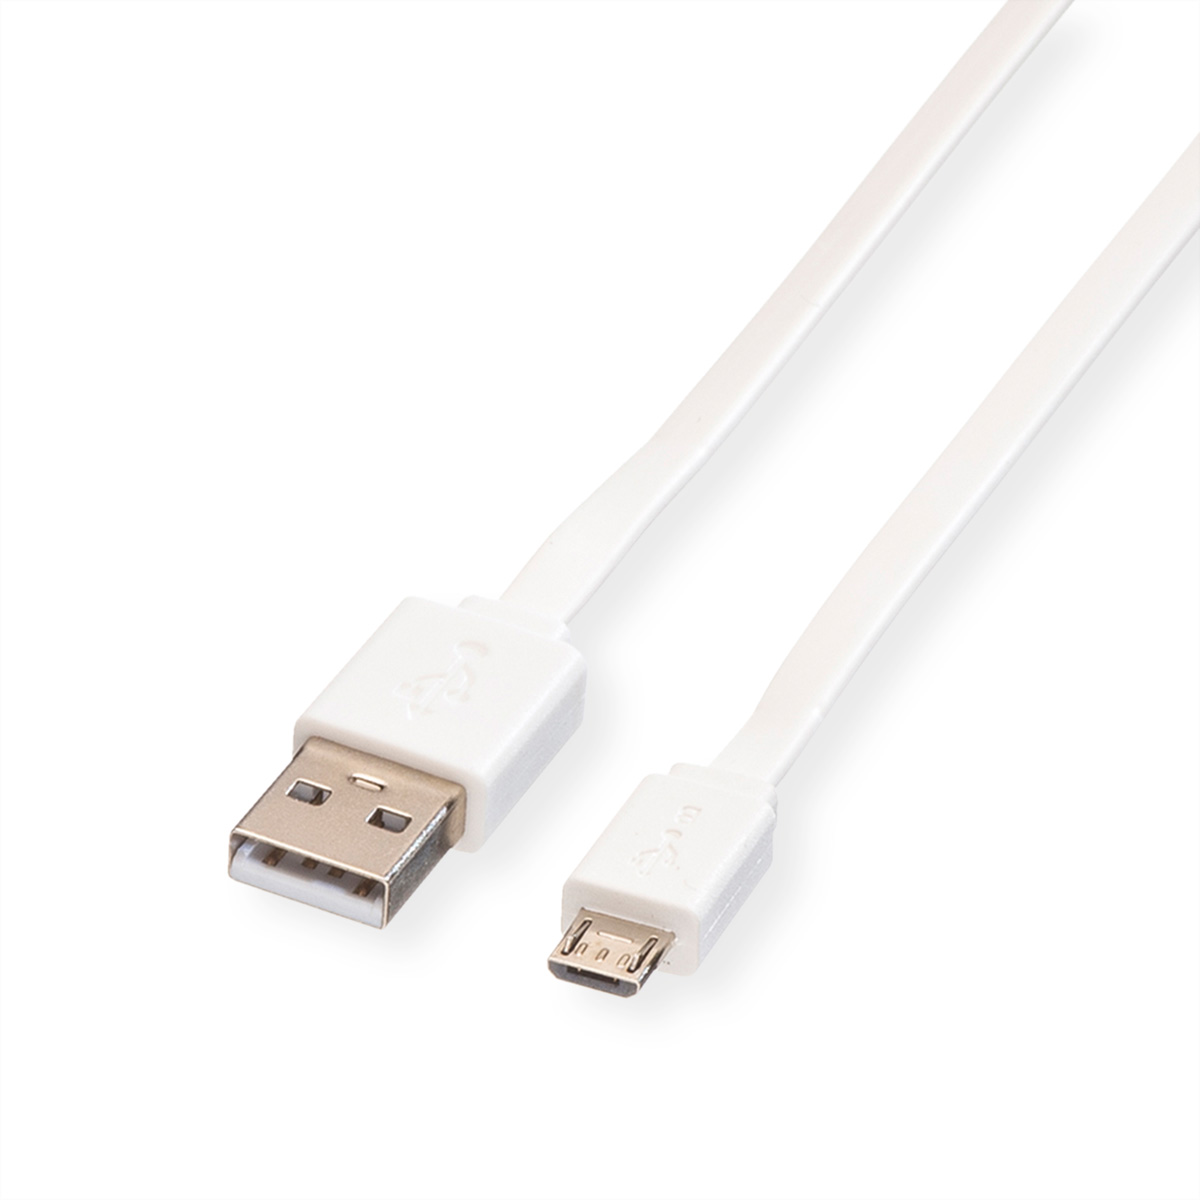 ROLINE USB 2.0 Kabel, USB A ST - Micro USB B ST 1,0 m